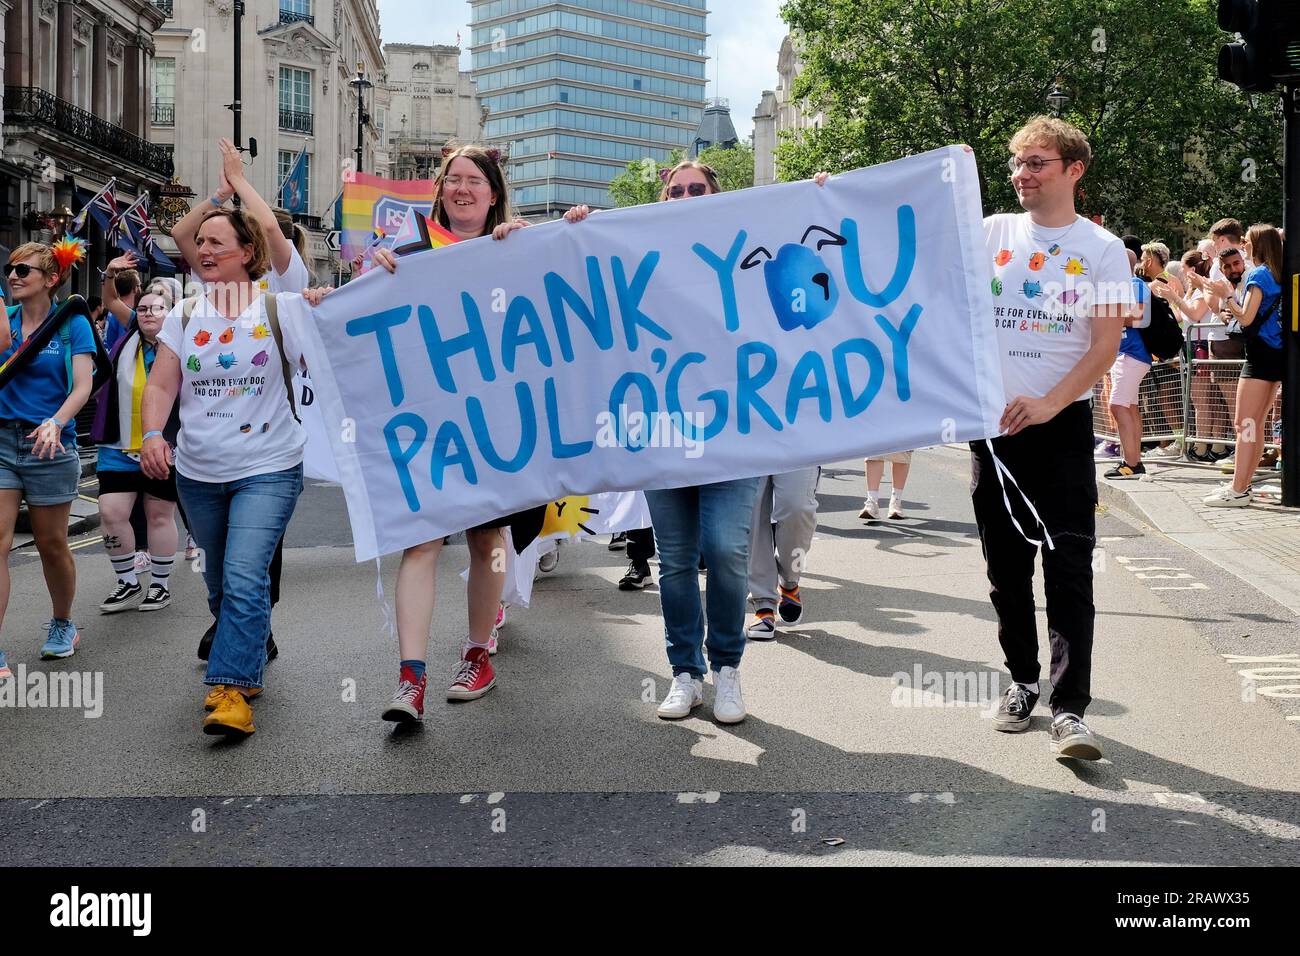 London, Großbritannien. Stolz auf die Londoner Parade, die Battersea Cats and Dogs Home repräsentieren, danken Paul O'Grady für seine langfristige Unterstützung. Stockfoto